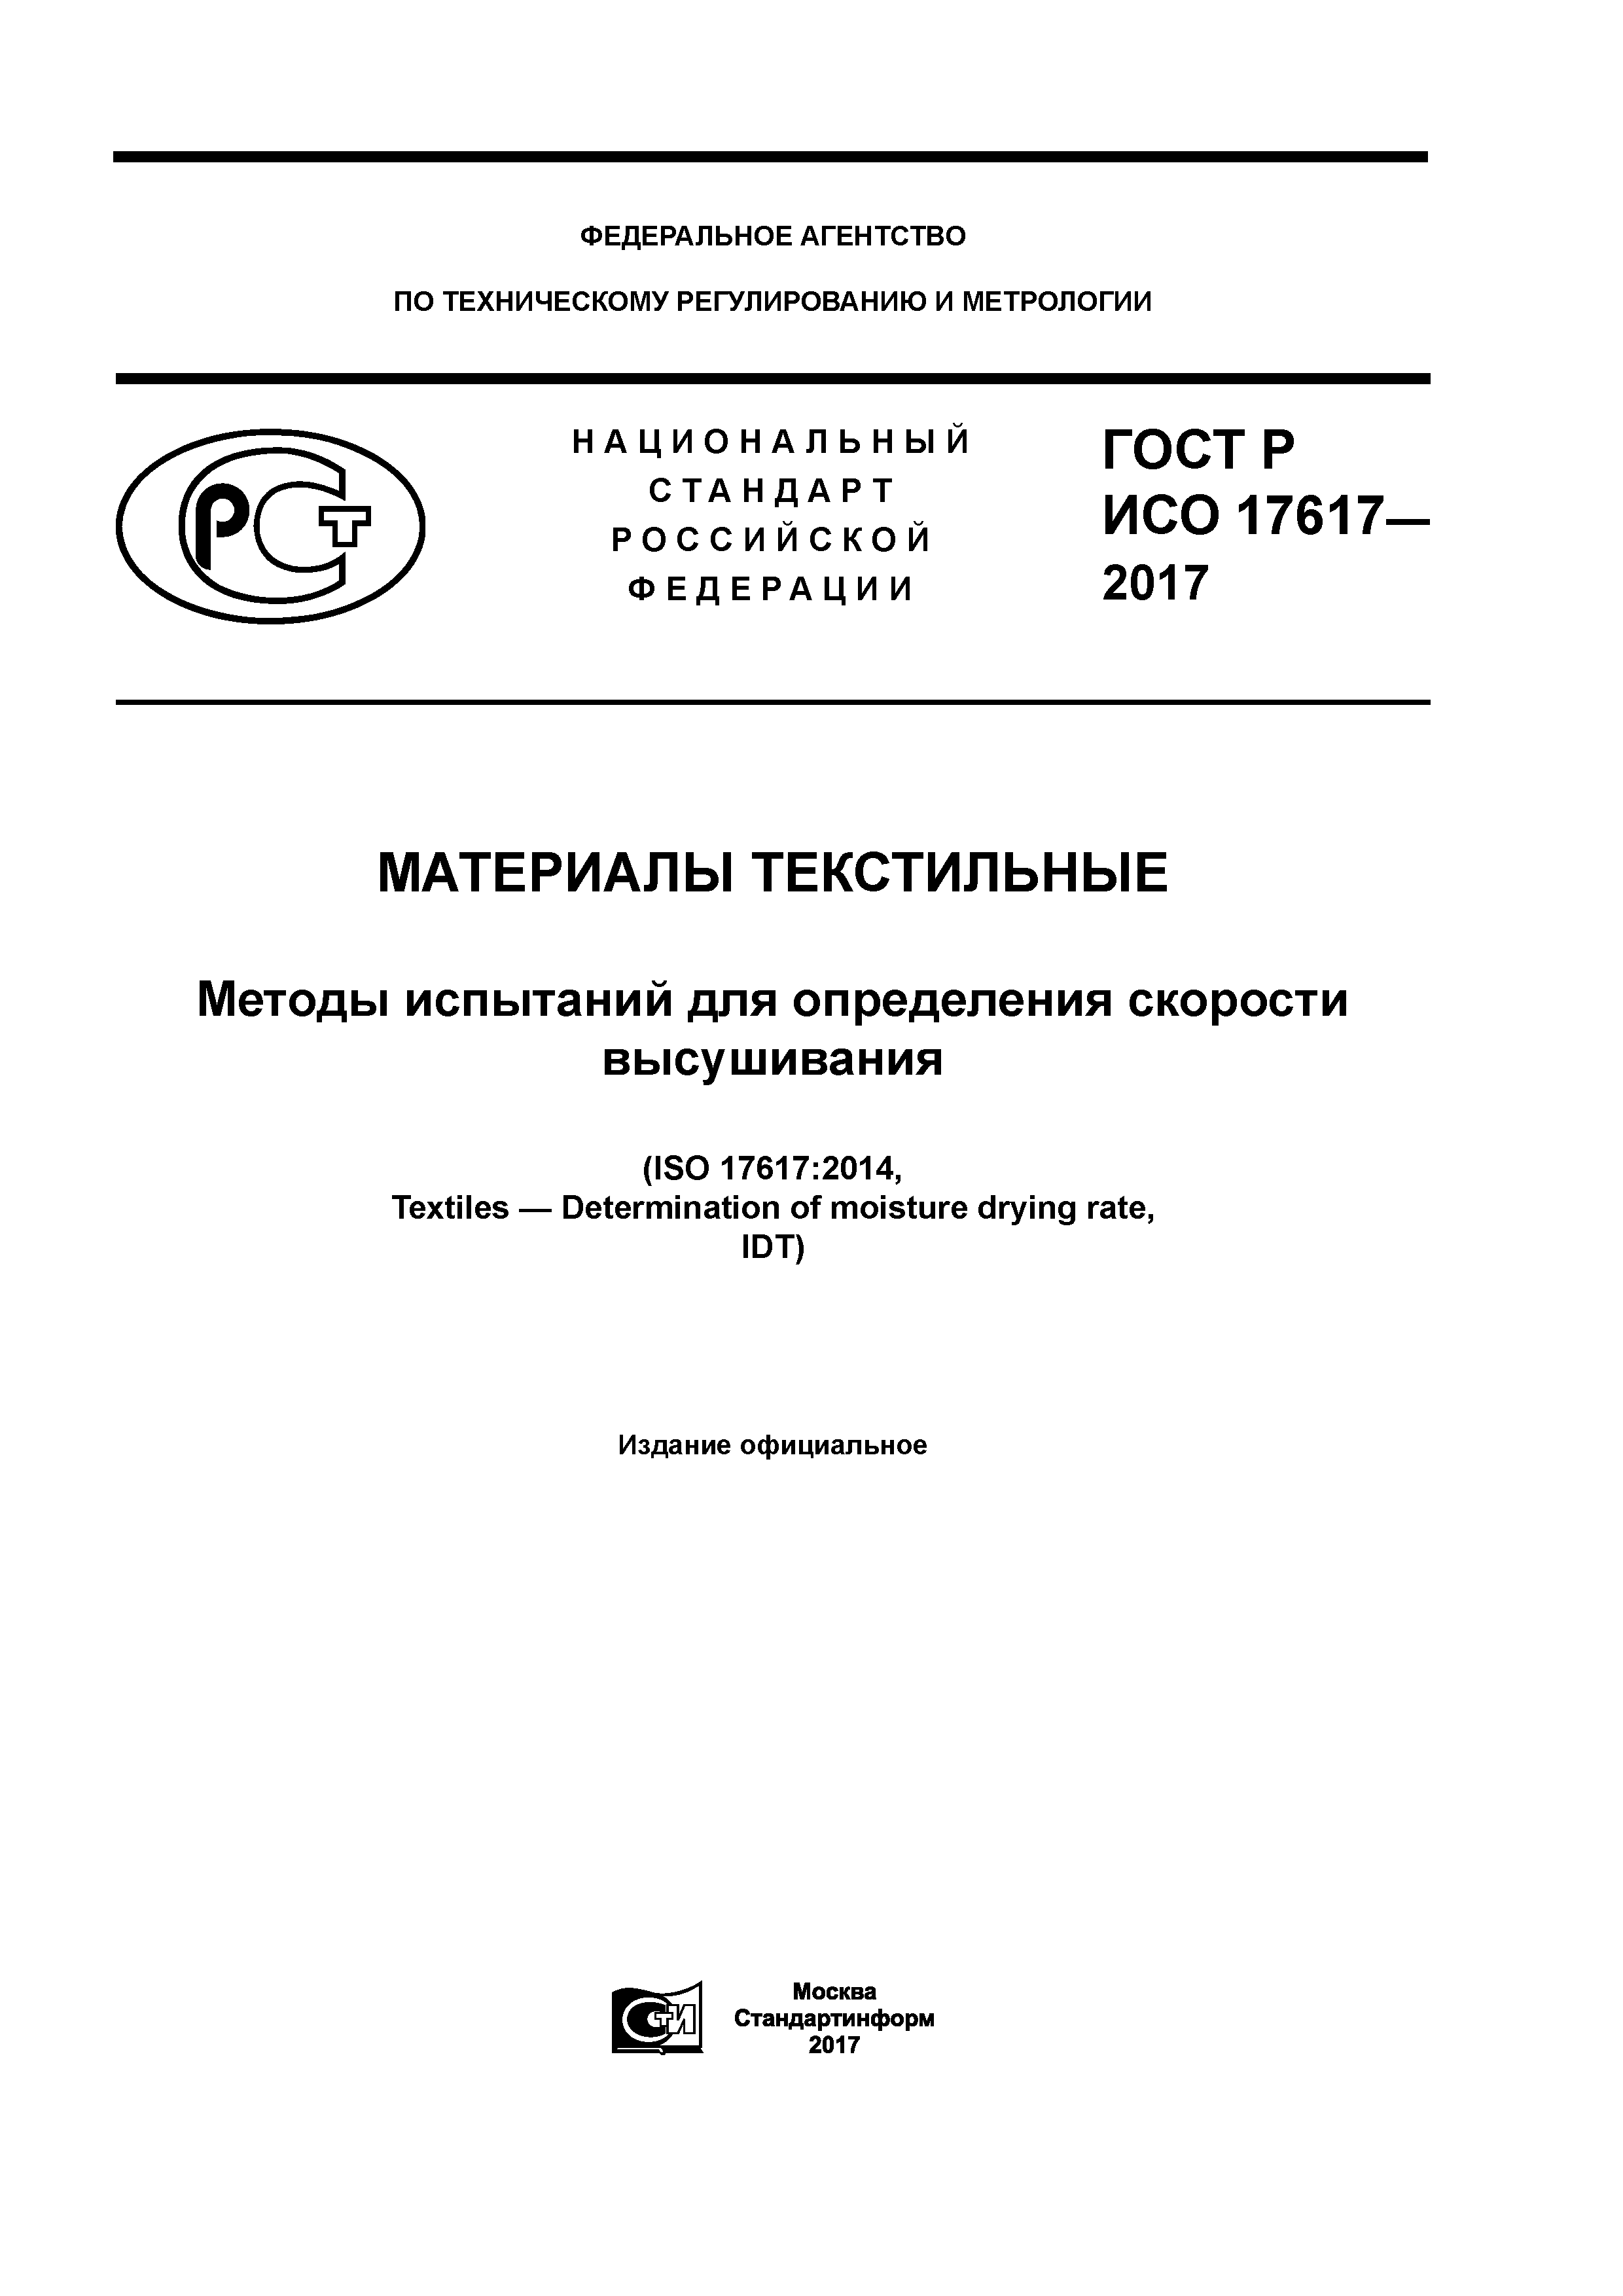 ГОСТ Р ИСО 17617-2017